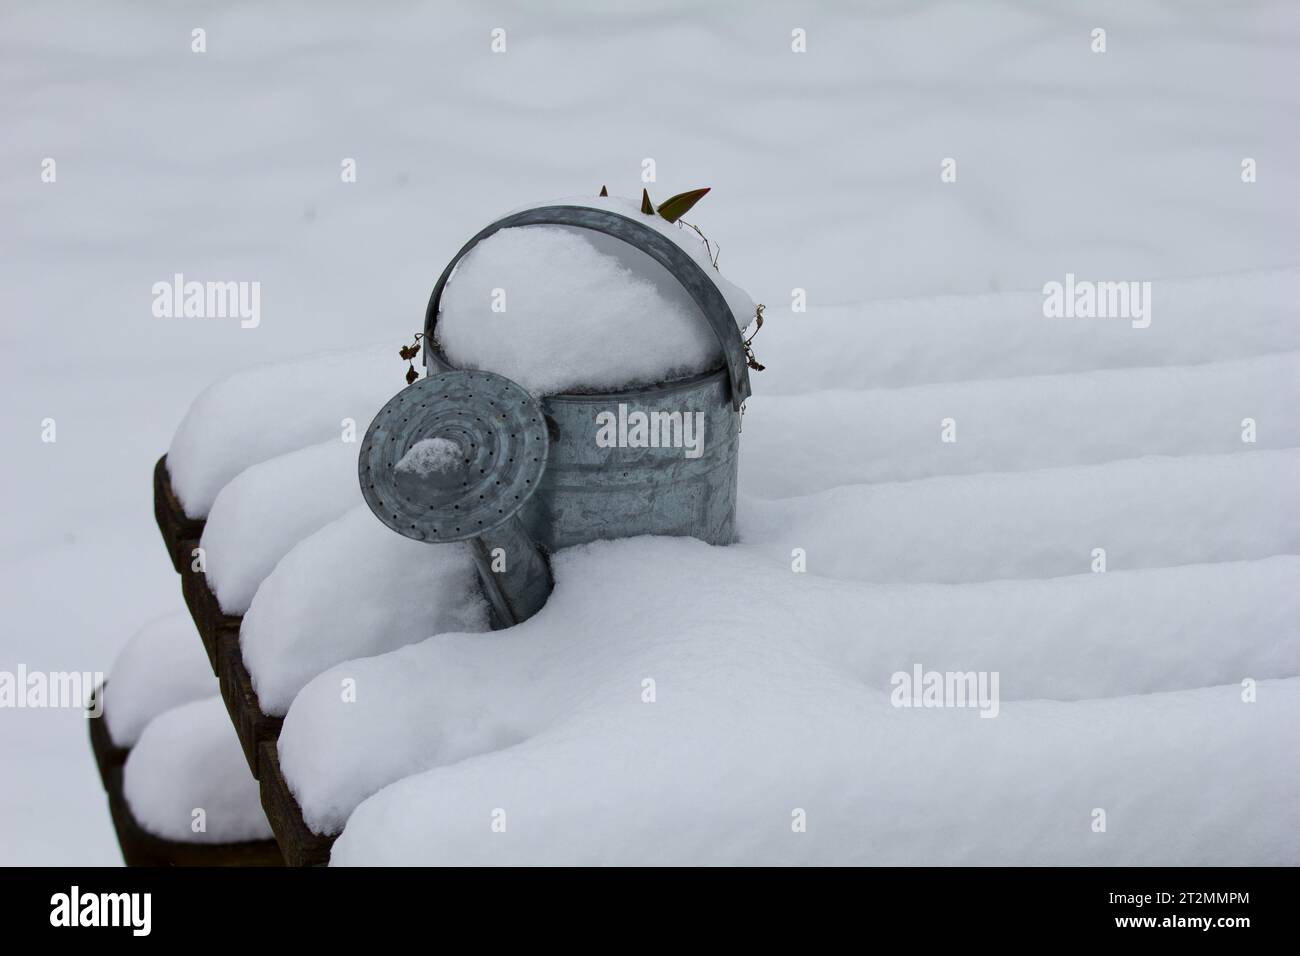 Emaille-Gießkanne auf schneebedeckter Bank. Überwinterende Gartenbewässerungskanne. Stockfoto